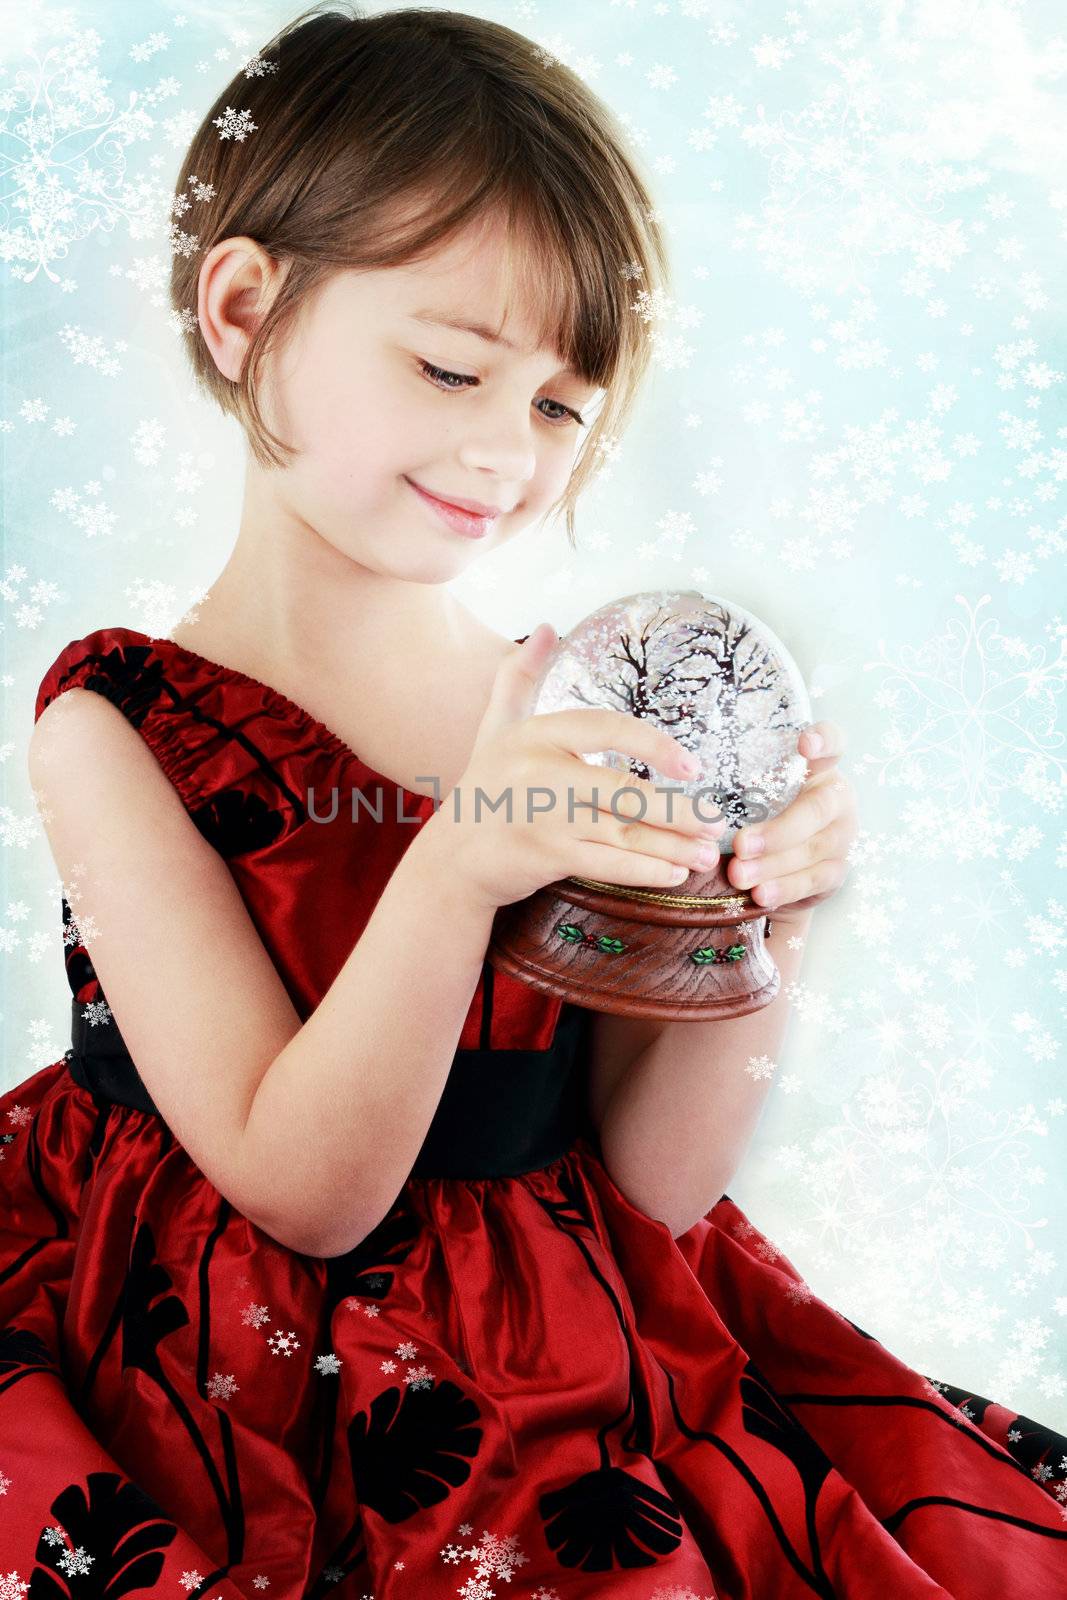 Child with Snow Globe by StephanieFrey